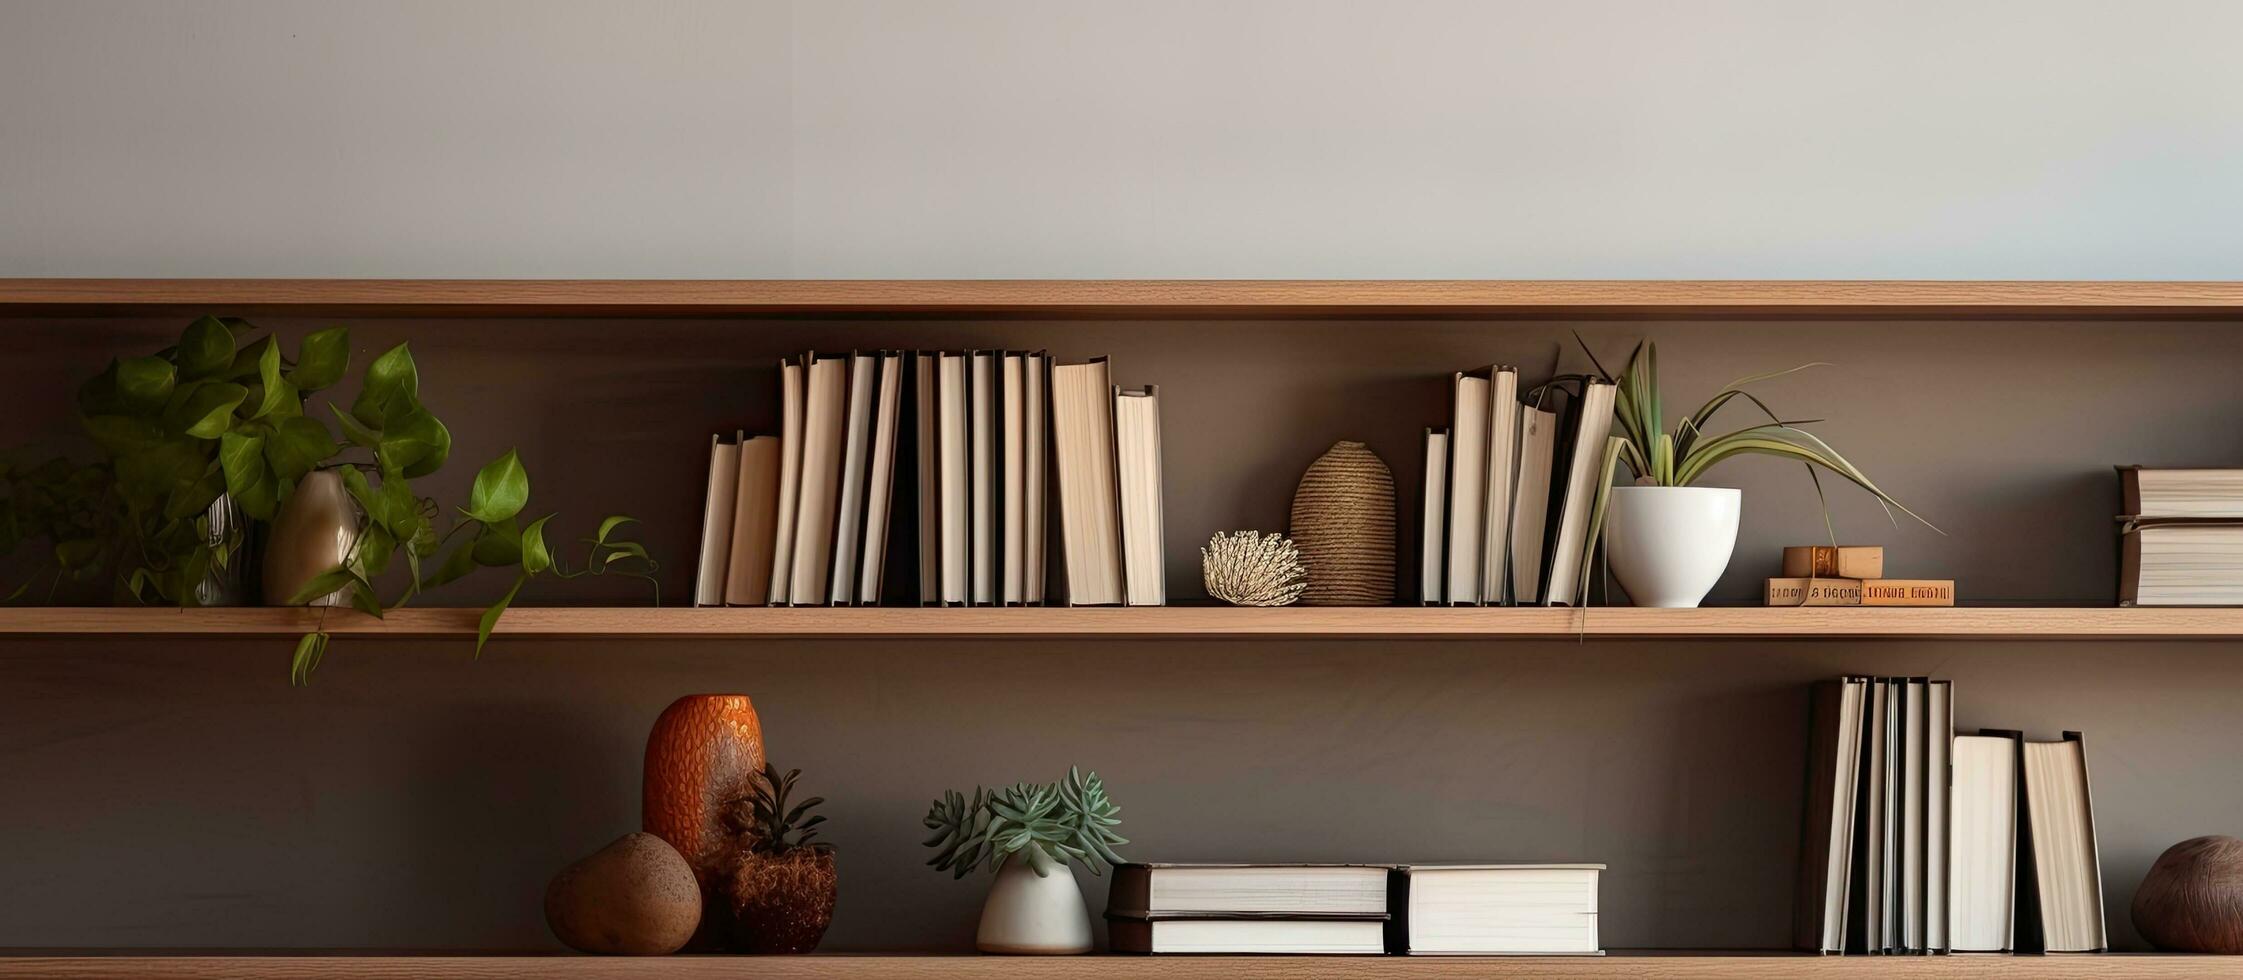 photo de une étagère à livres rempli avec livres et végétaux, création une confortable et attrayant atmosphère avec copie espace